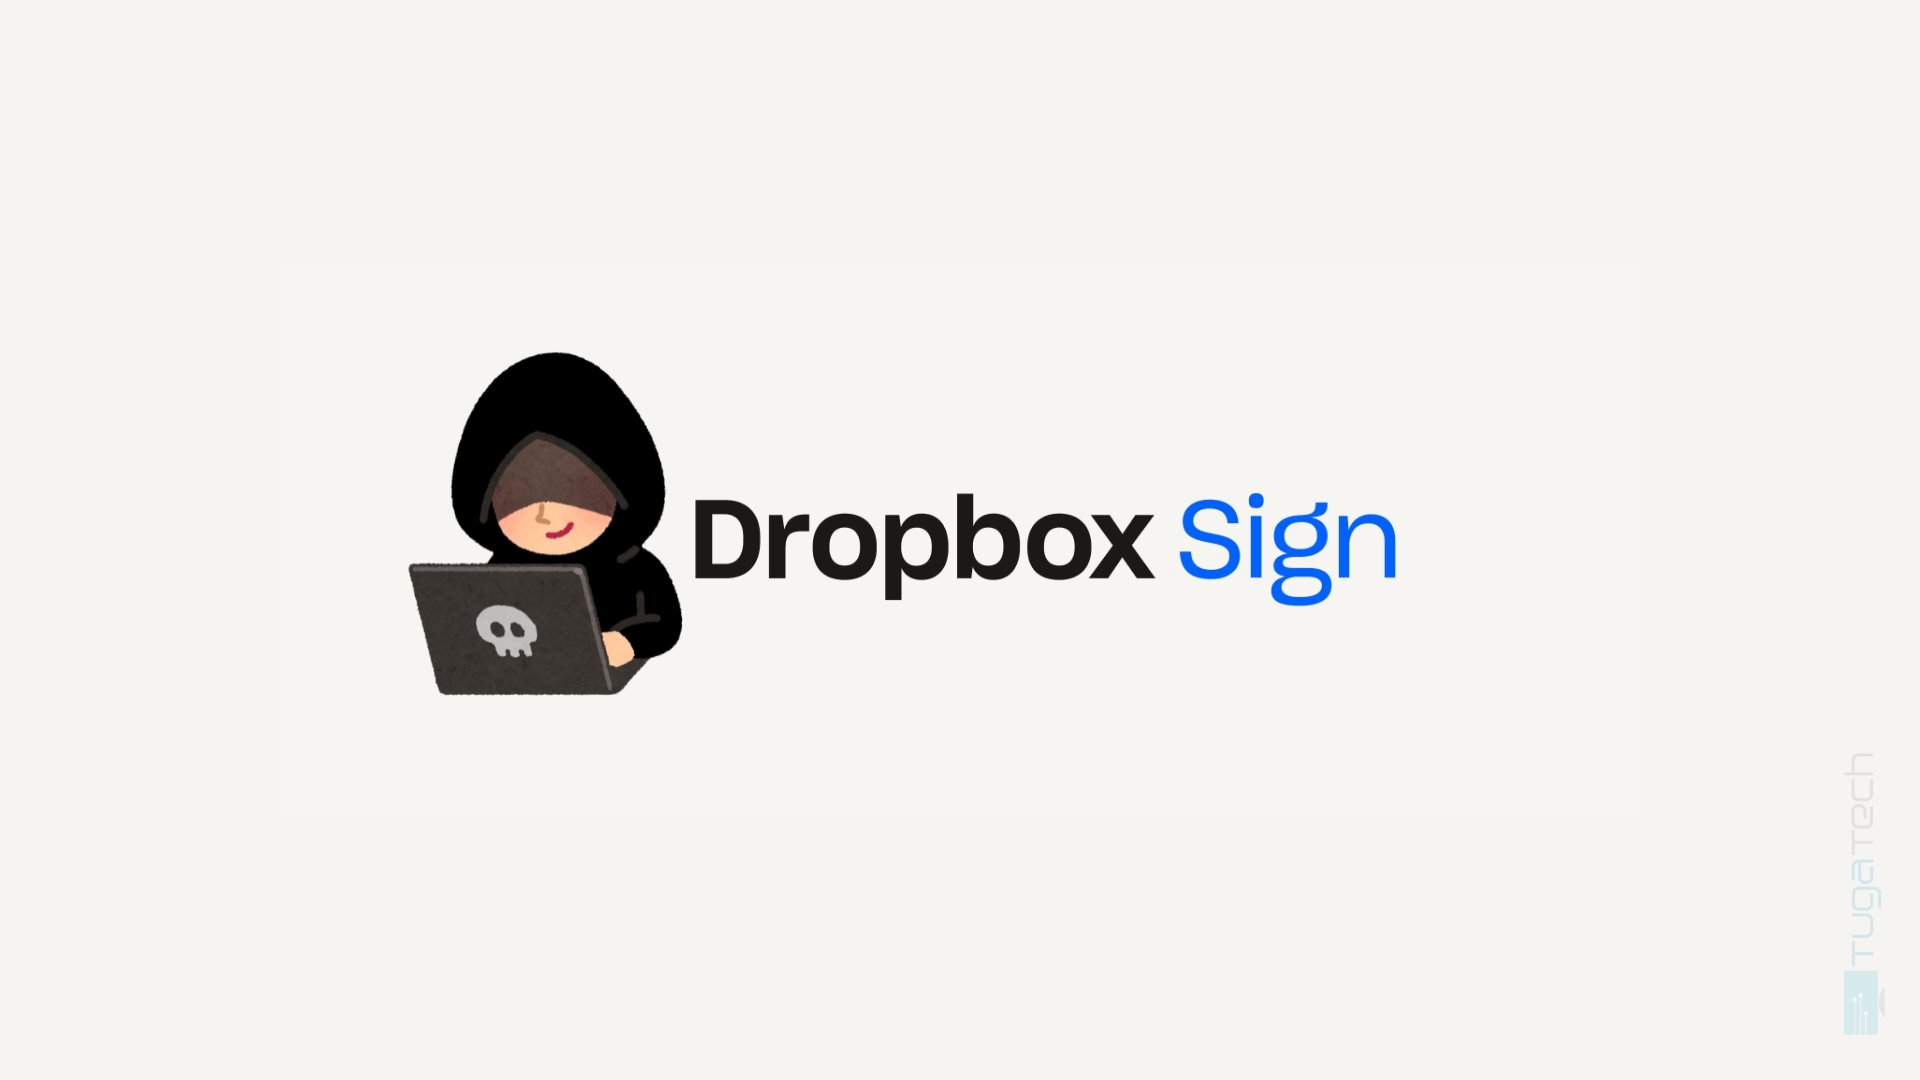 DropBox confirma roubo de dados de clientes em plataforma de assinatura eletrónica